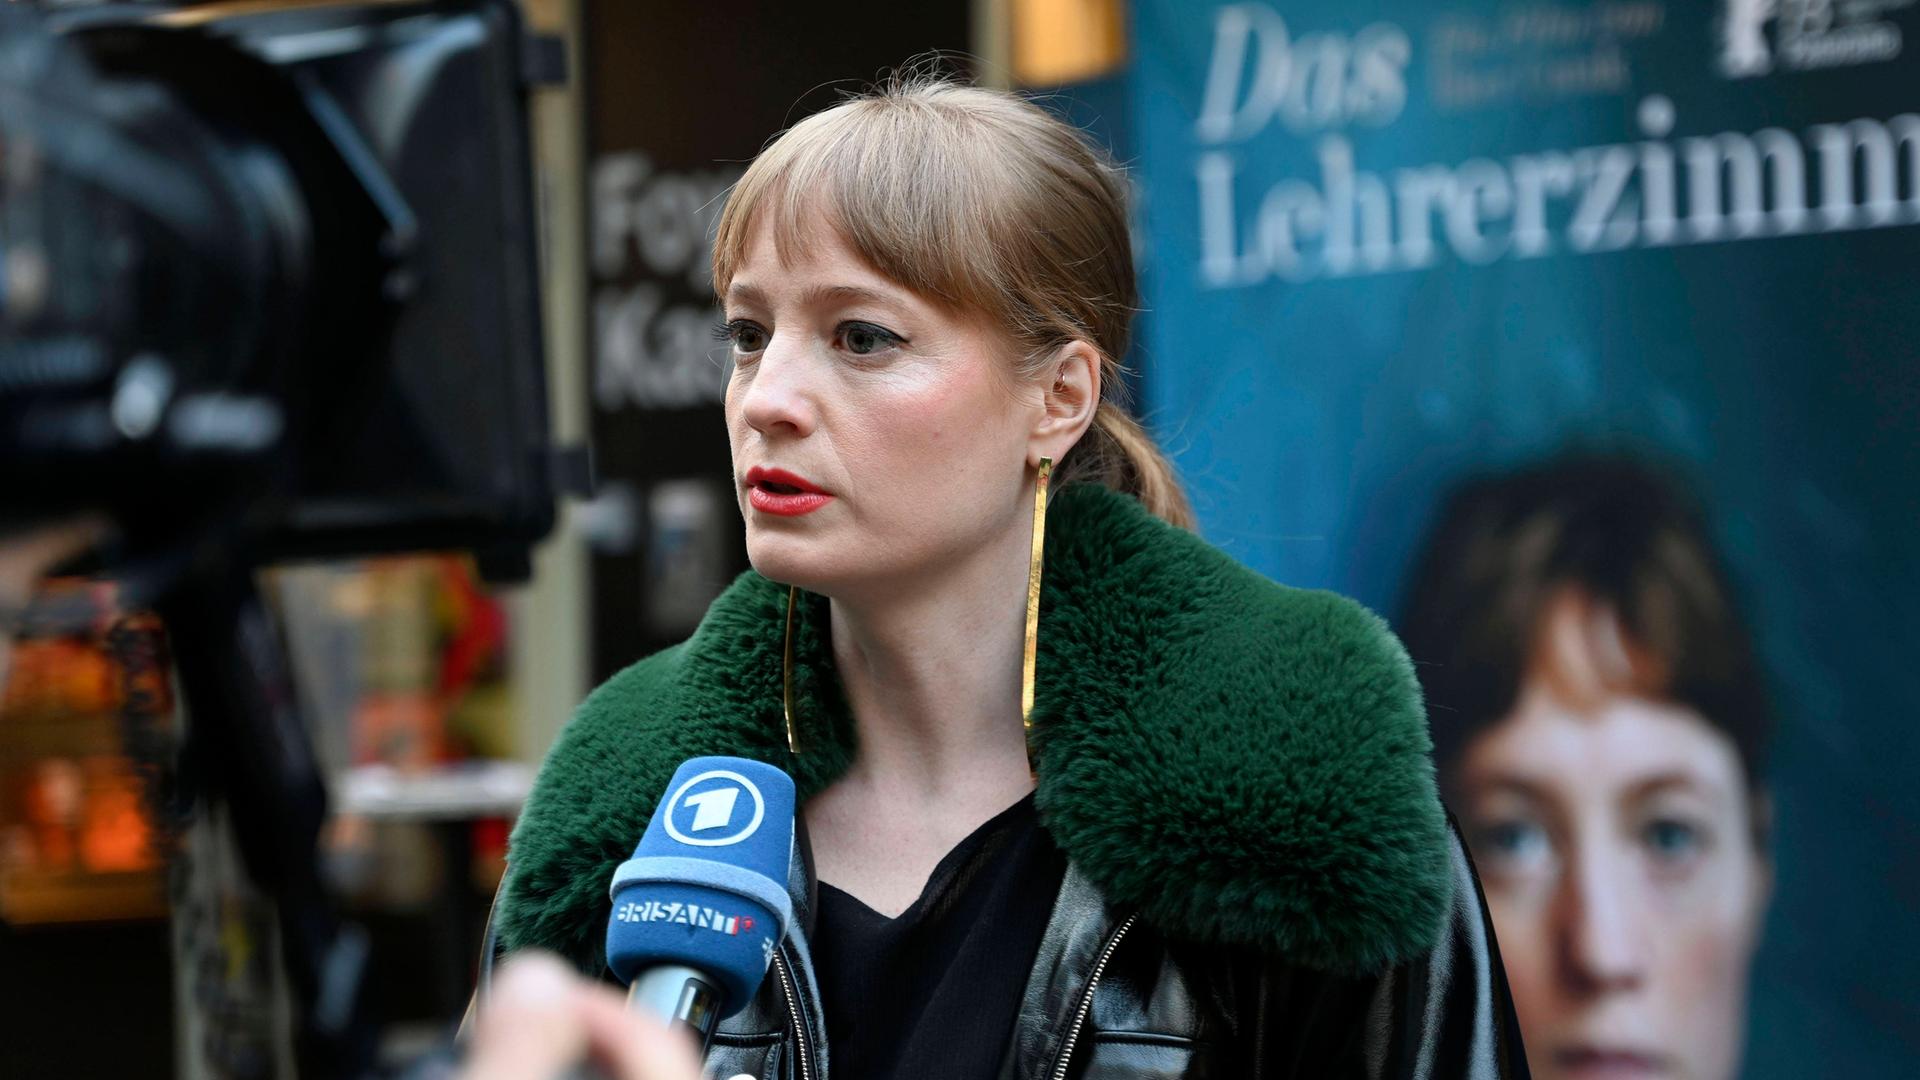 Leonie Benesch bei der Premiere des Kinofilms Das Lehrerzimmer in den City Kinos in München.